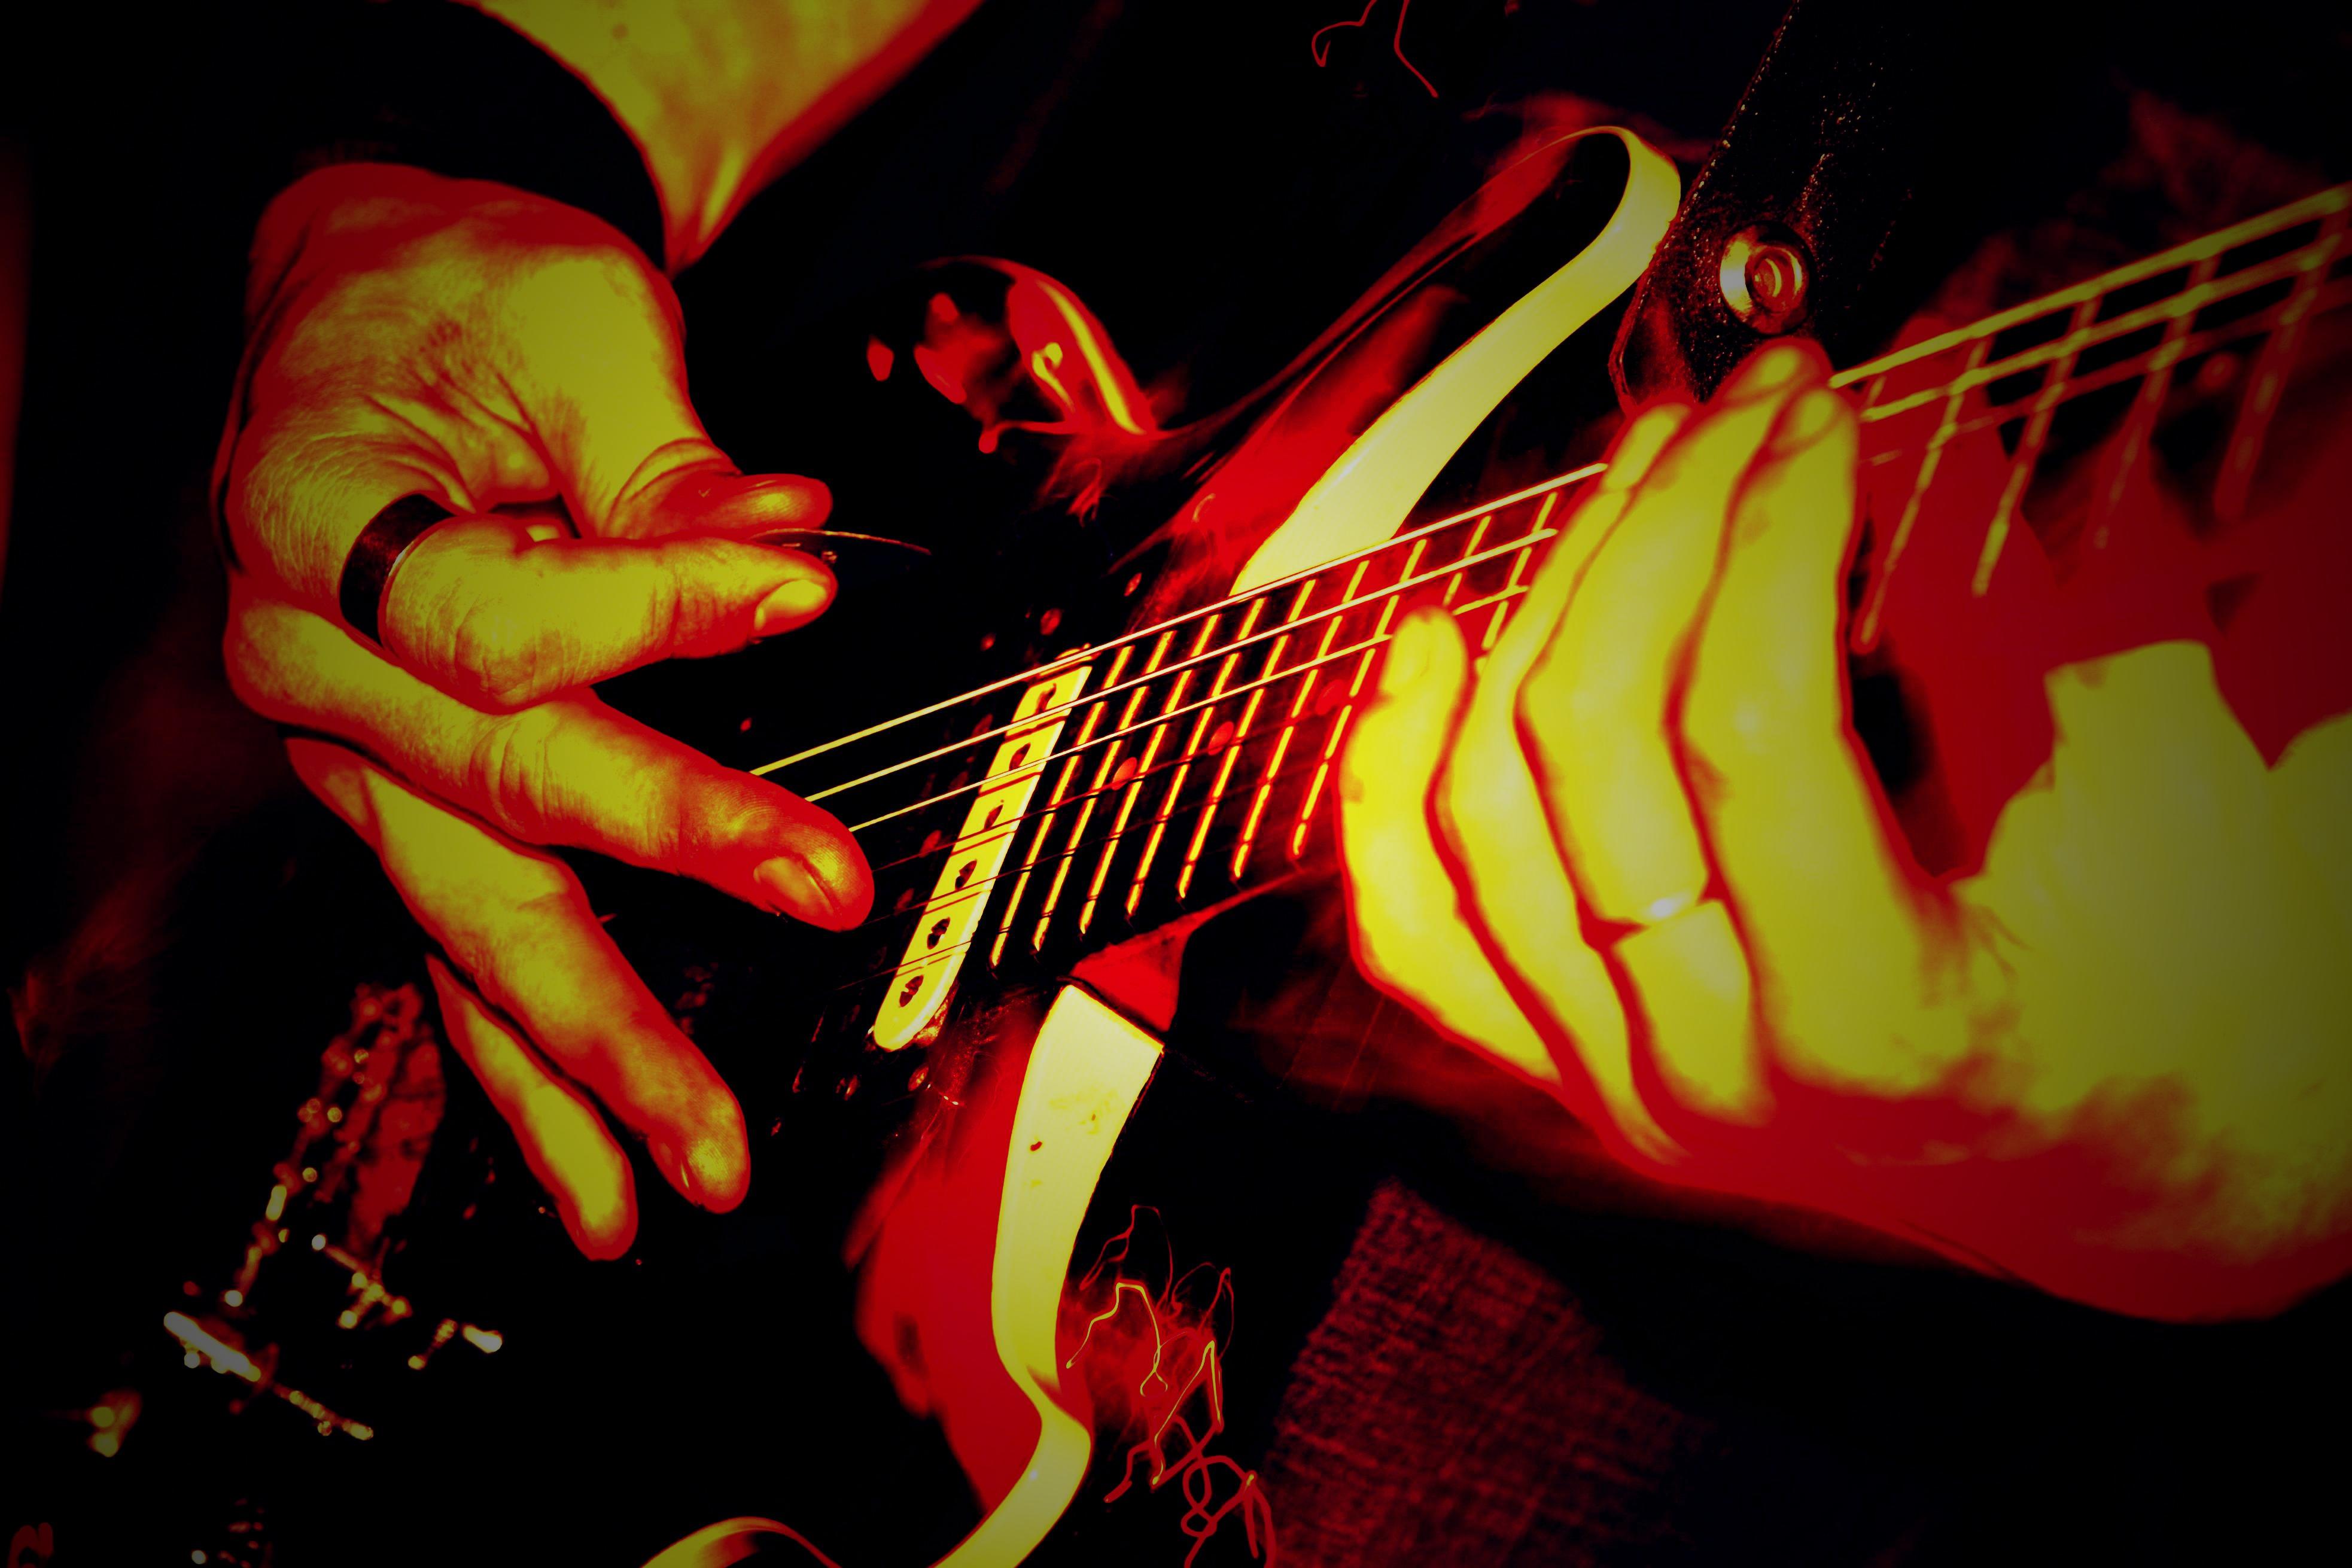 Jamming On Live Guitar - Guitar Metal Wallpaper Hd - HD Wallpaper 